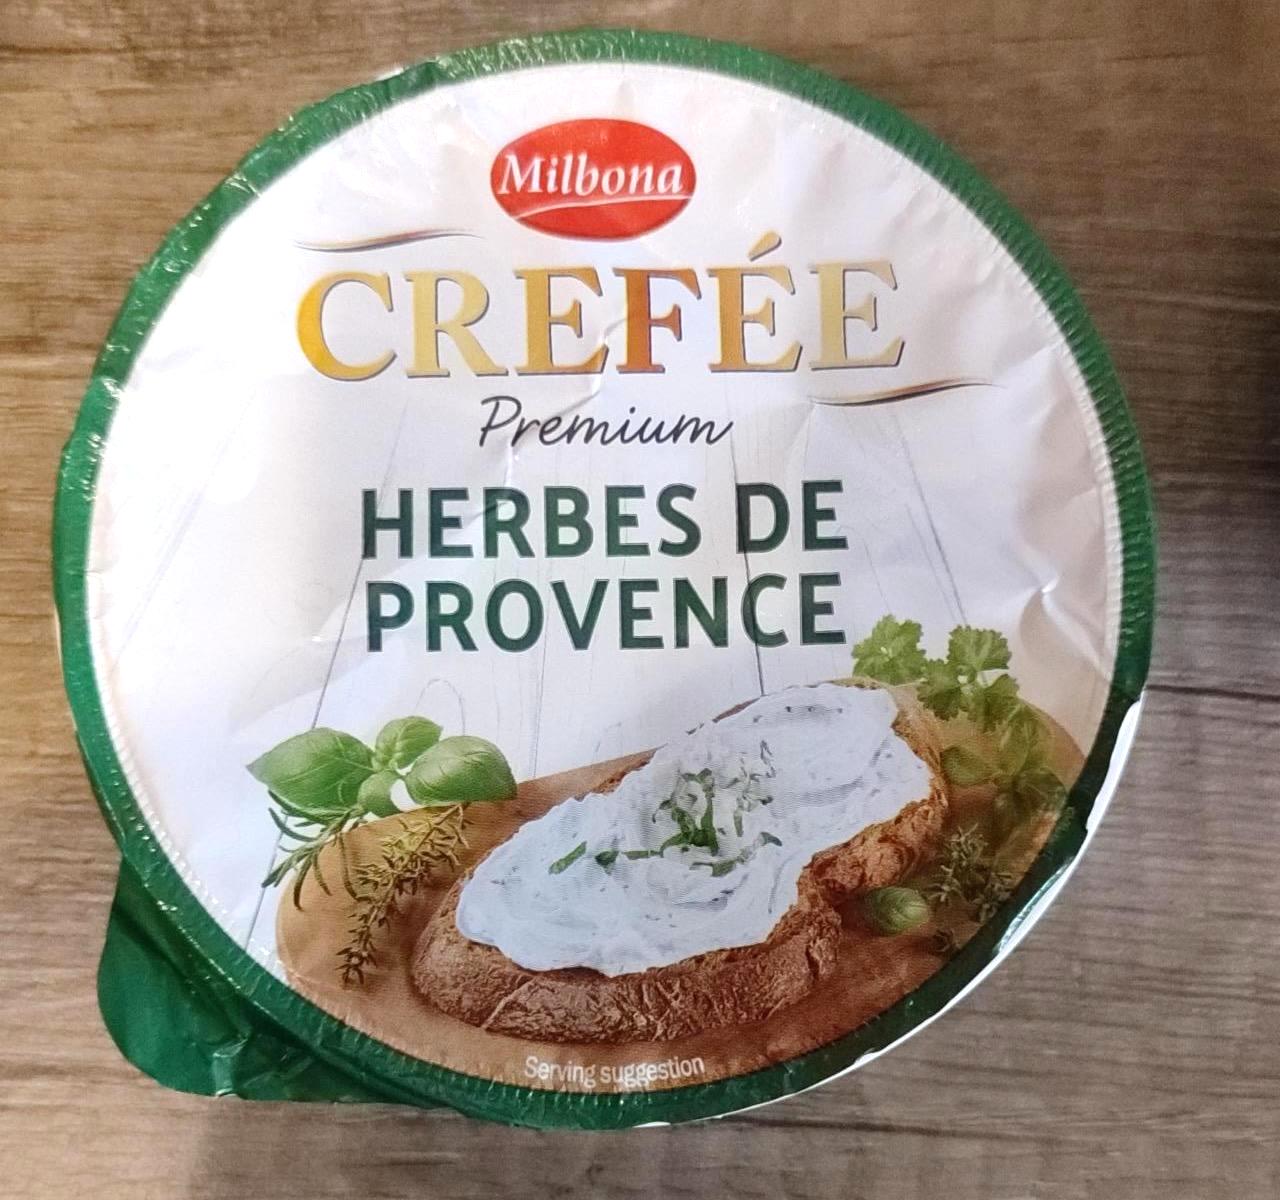 Képek - Crefée Premium zöldfűszeres sajtkrém Milbona